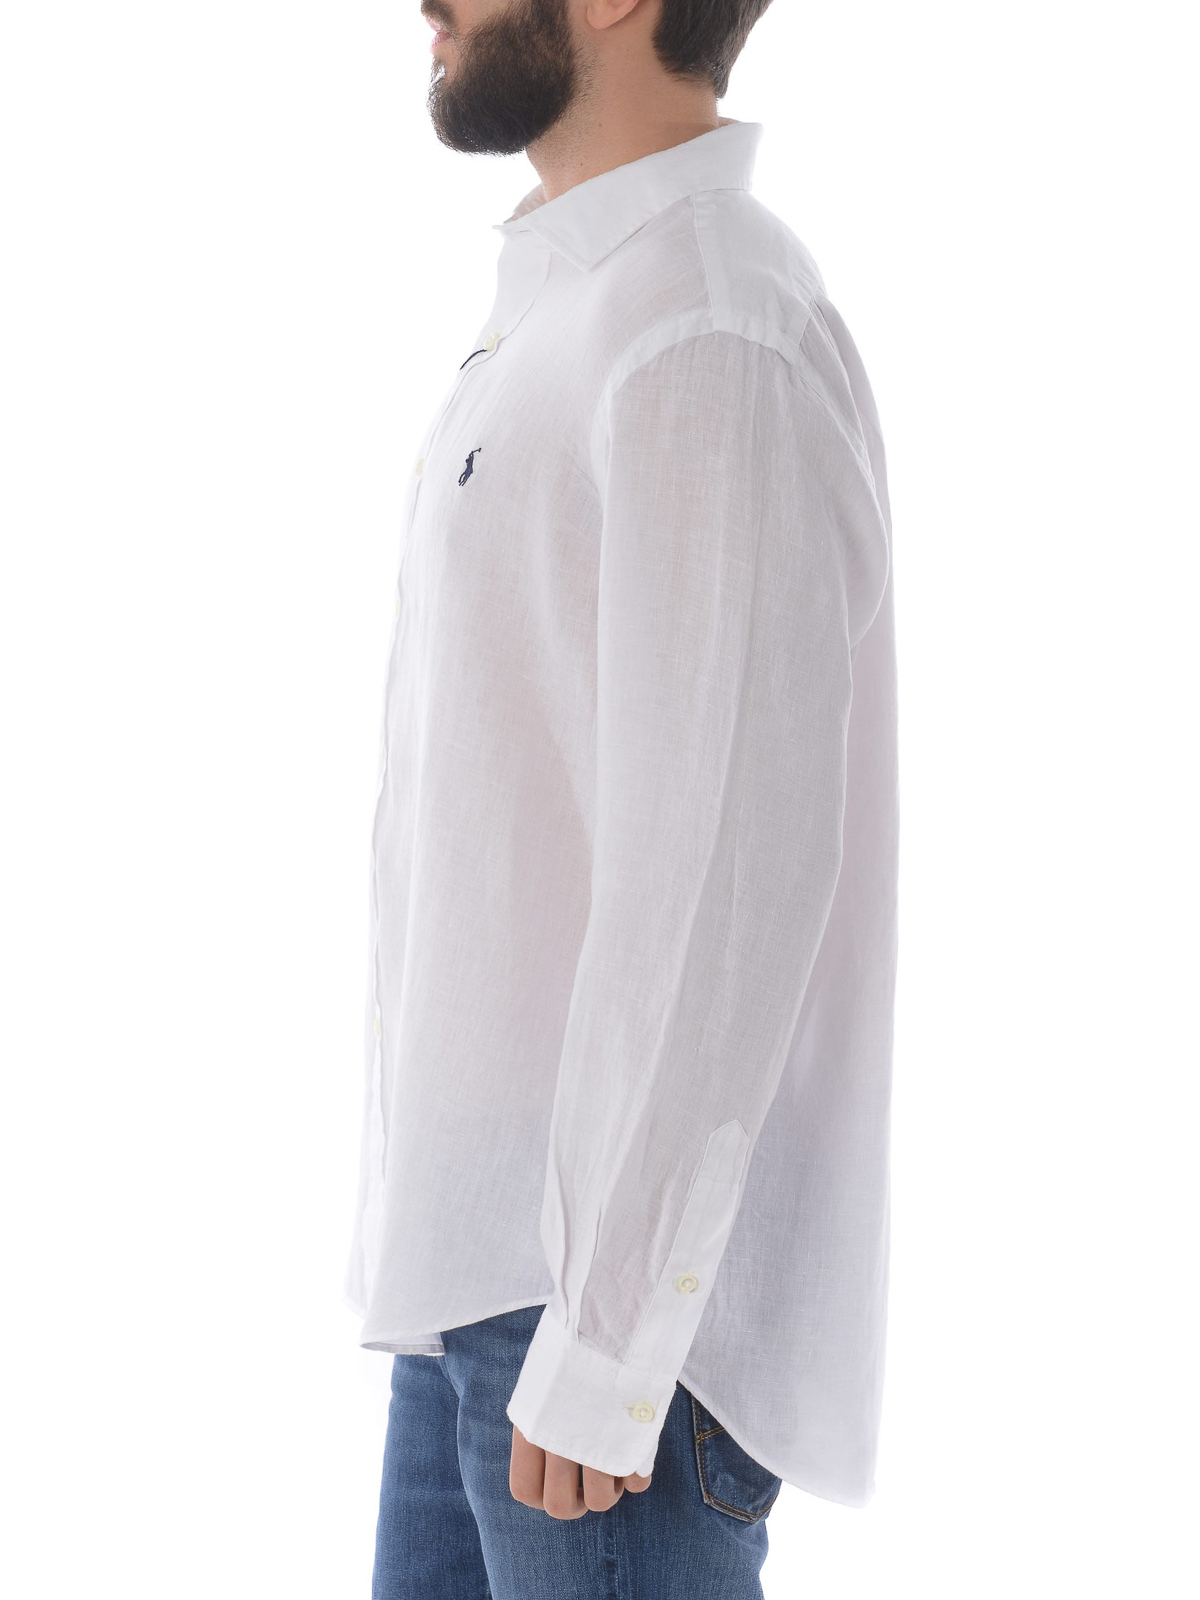 Actualizar 96+ imagen ralph lauren white linen shirt - Abzlocal.mx